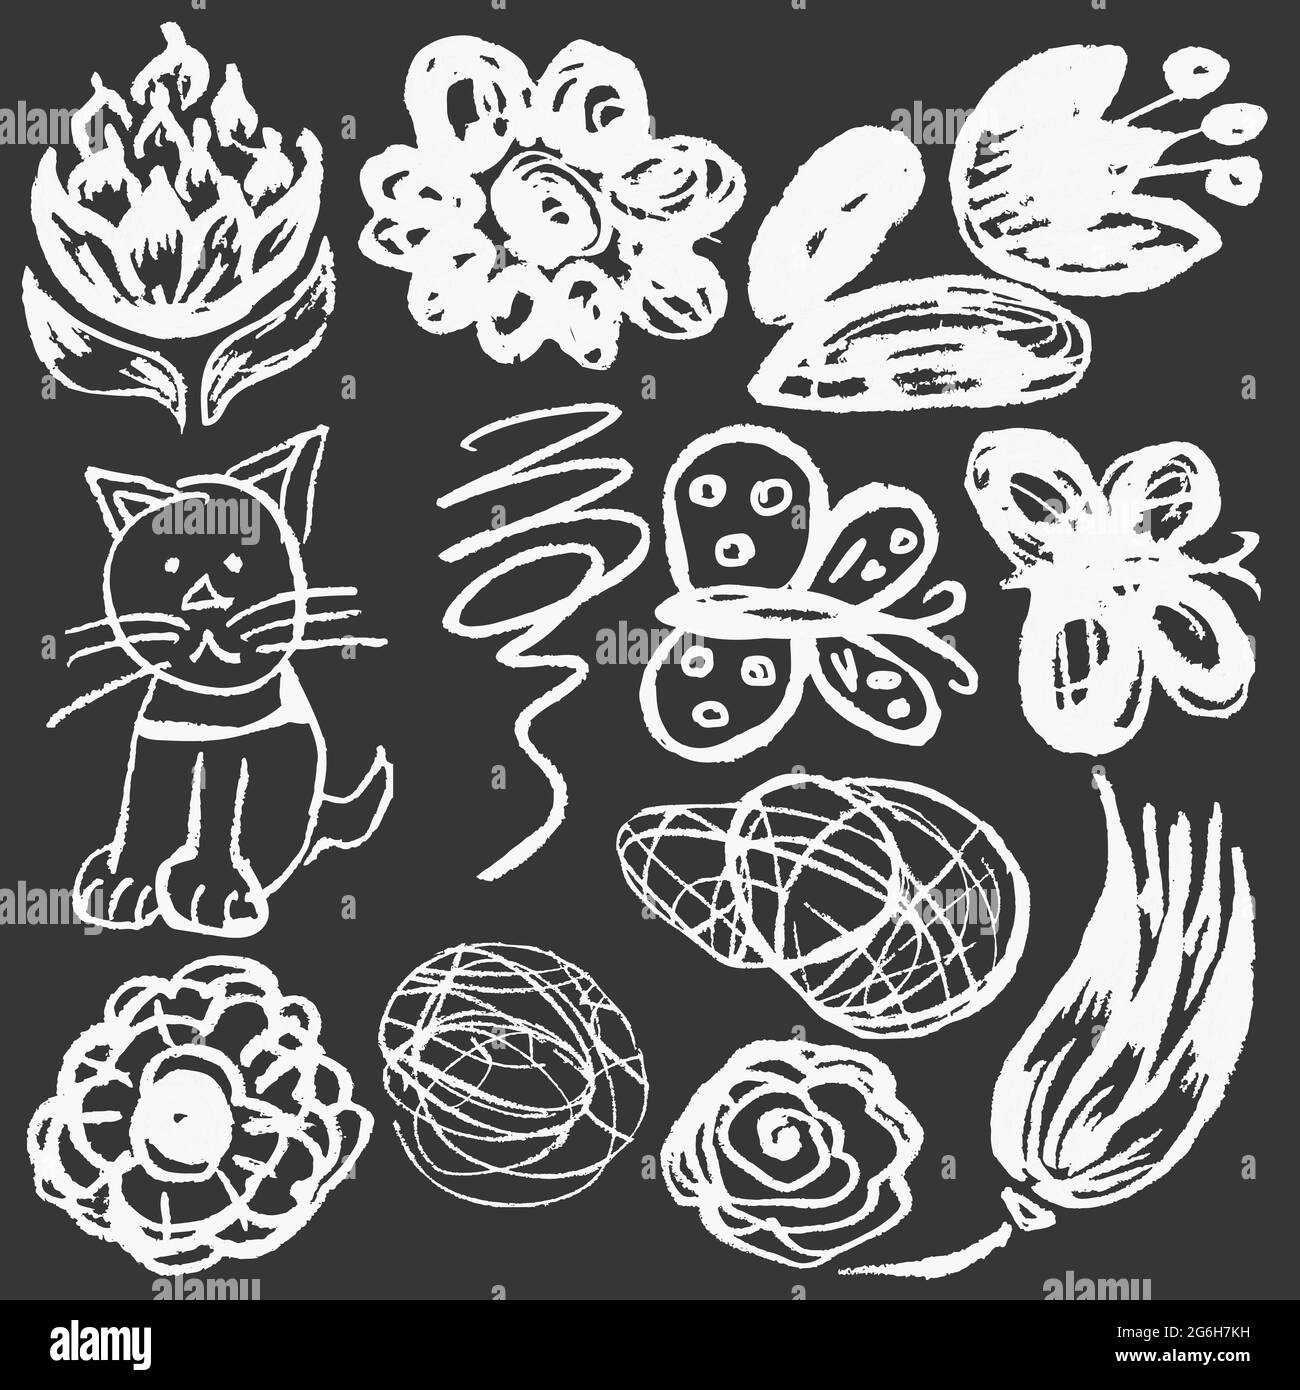 Niedliche kindliche Zeichnung mit weißer Kreide auf Tafel. Pastellkreide  oder Bleistift lustige Doodle Stil Vektor. Blumen, Kritzeleien, Katzen,  Schmetterlinge Stock-Vektorgrafik - Alamy